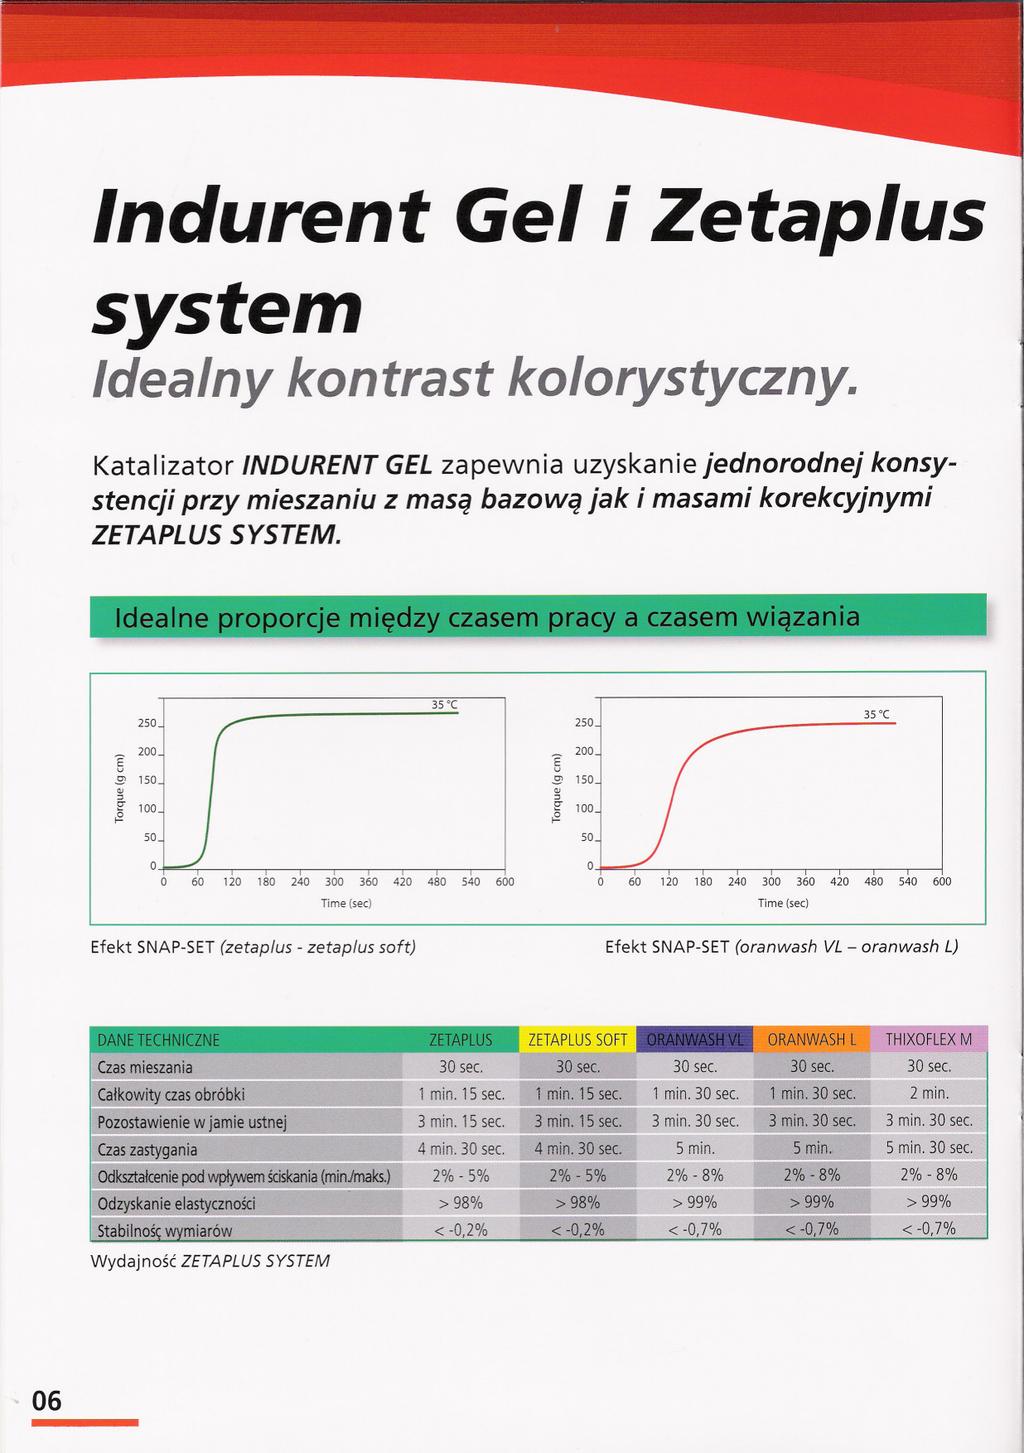 Indurent Gel i Zetaplus system Idealny kontrast kolorystyczny.